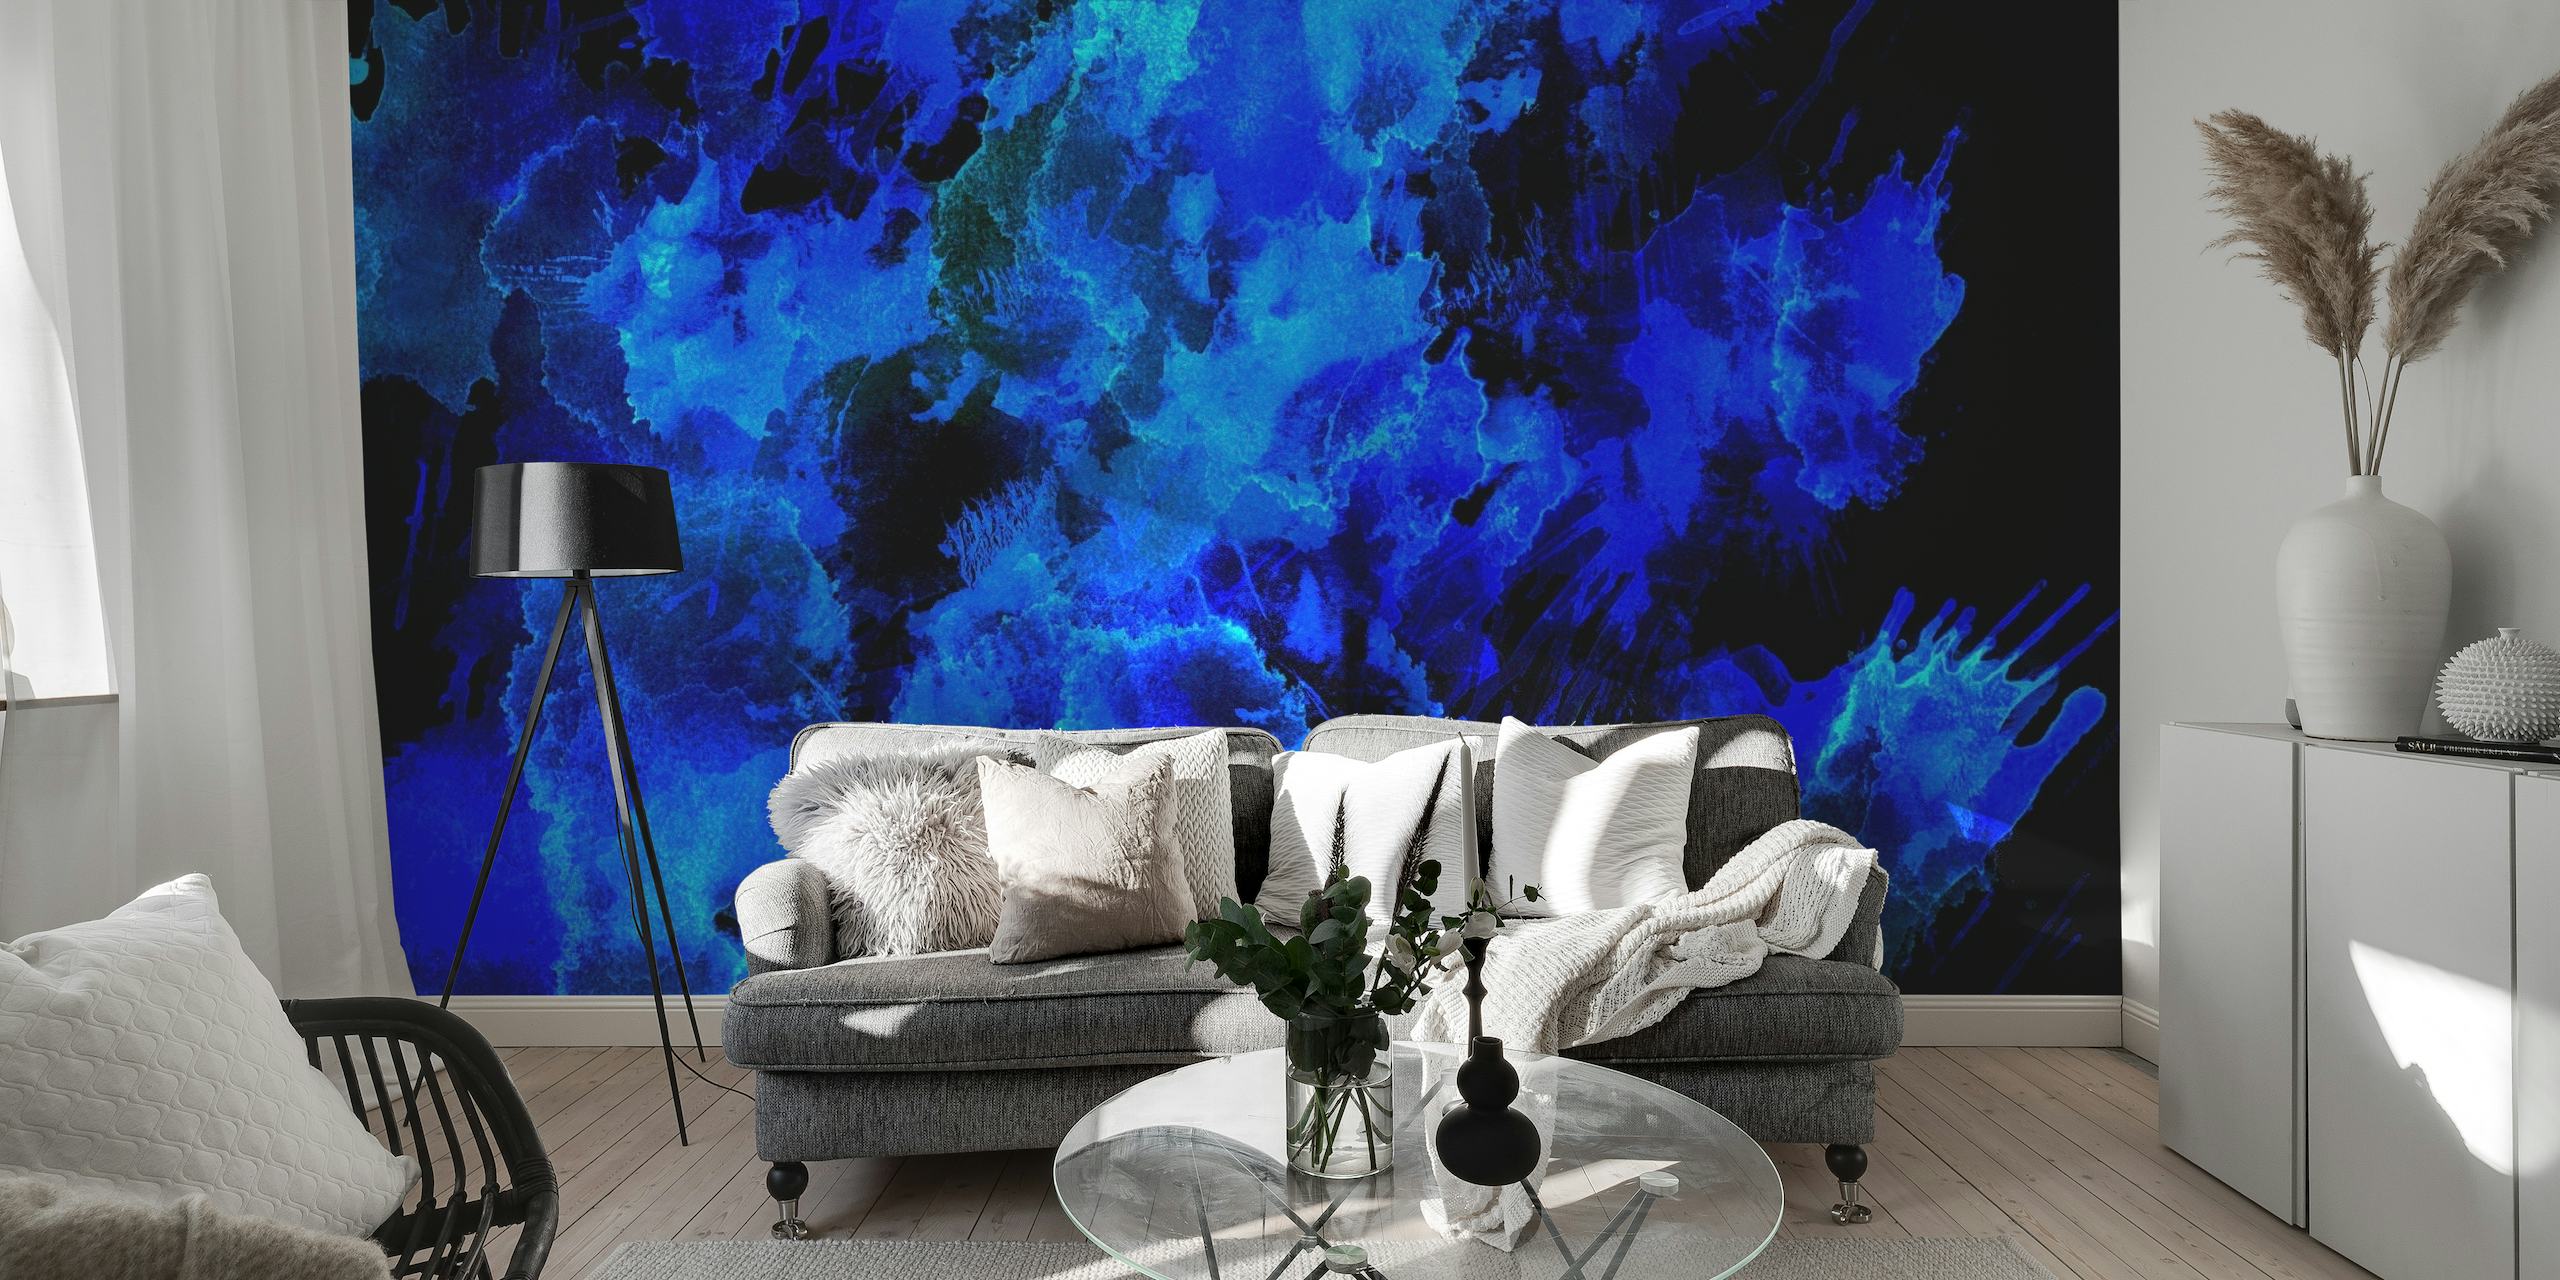 Mural apstraktnih plavih nijansi koji priziva ljepotu noćnog neba ili oceanskih dubina